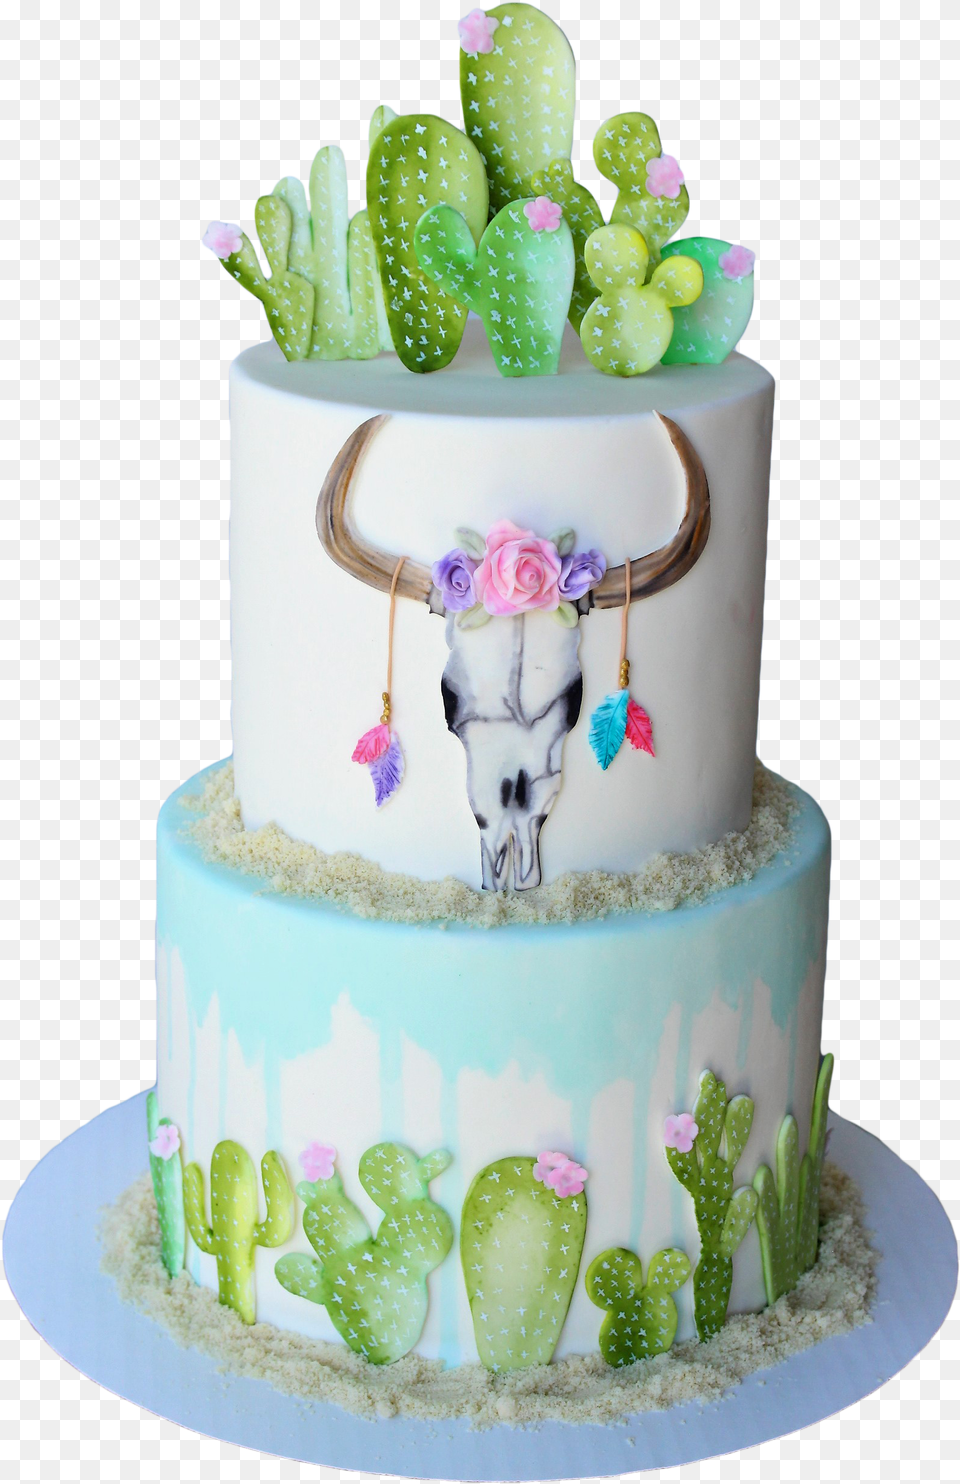 Watercolor Cactus Desert Cake Tutorial Watercolor Cactus Cake, Birthday Cake, Cream, Dessert, Food Png